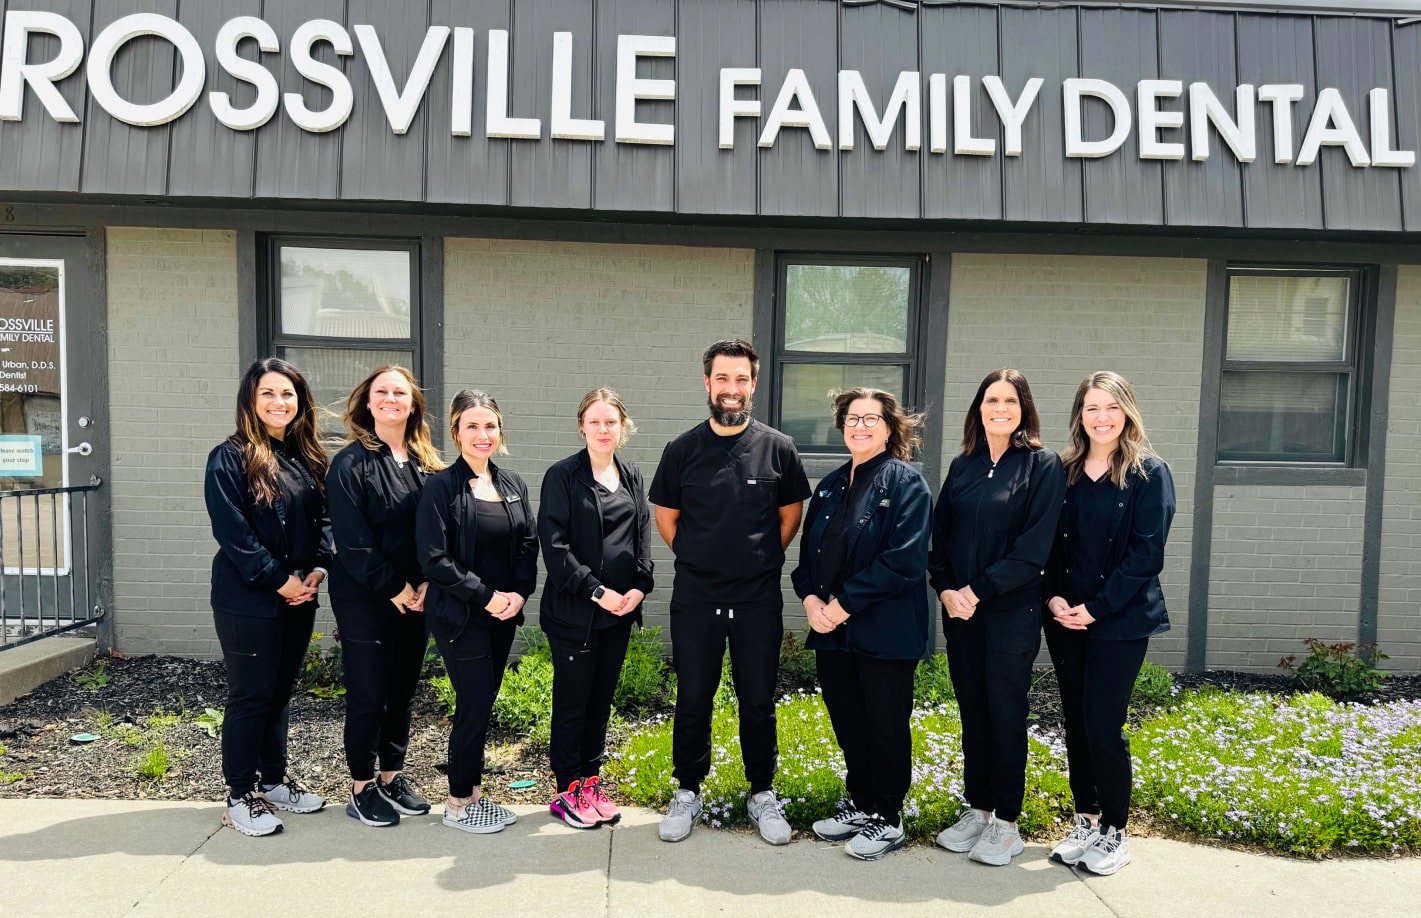 rossville family dental team 2